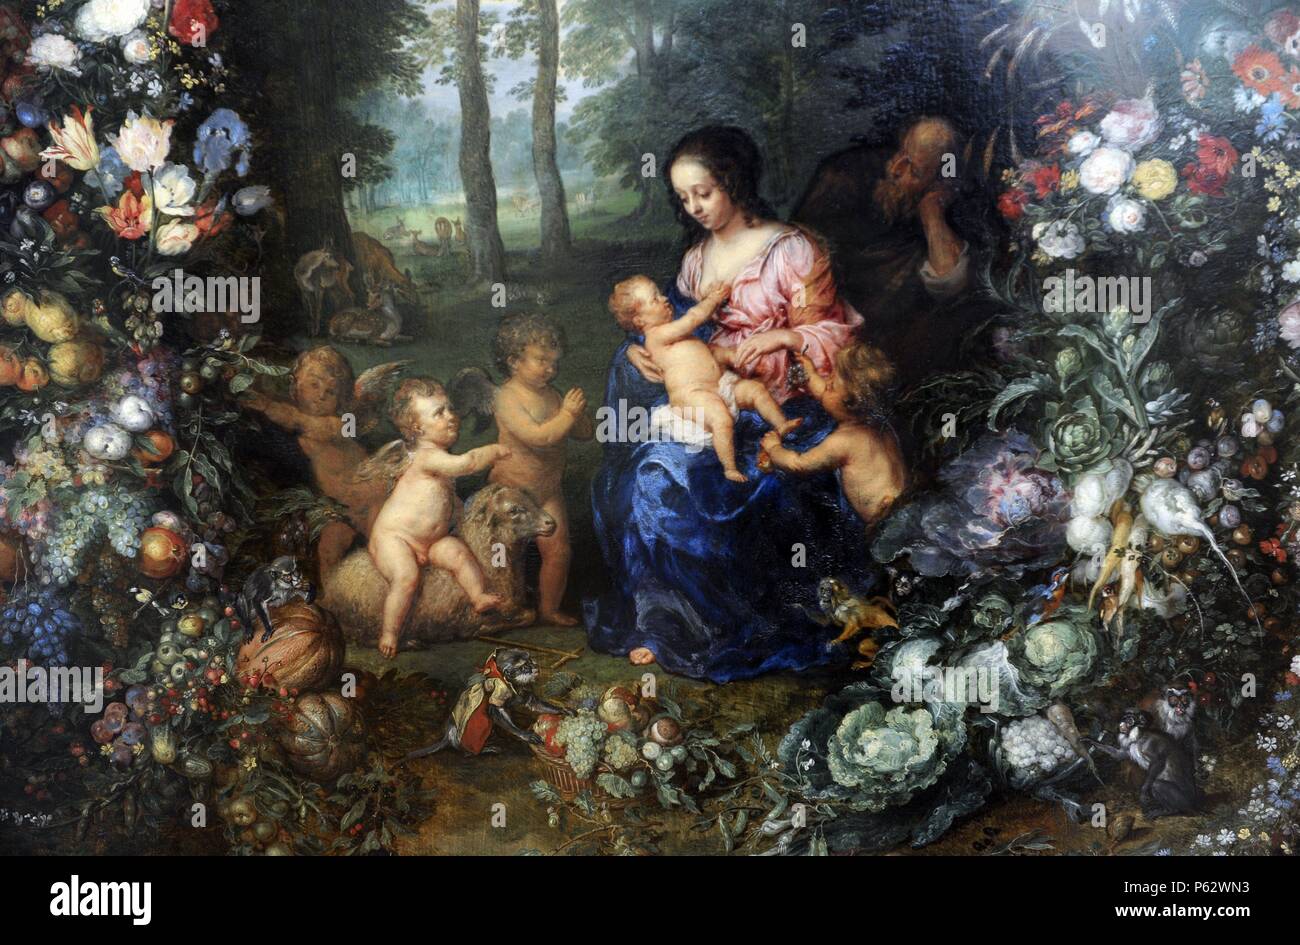 Jan Brueghel l'ancien (1568-1625) et Pieter van Avont (1600-1632). Les peintres flamands, Sainte Famille sur une guirlande de fleurs et de fruits, ca. 1620. L'Alte Pinakothek. Munich. L'Allemagne. Banque D'Images